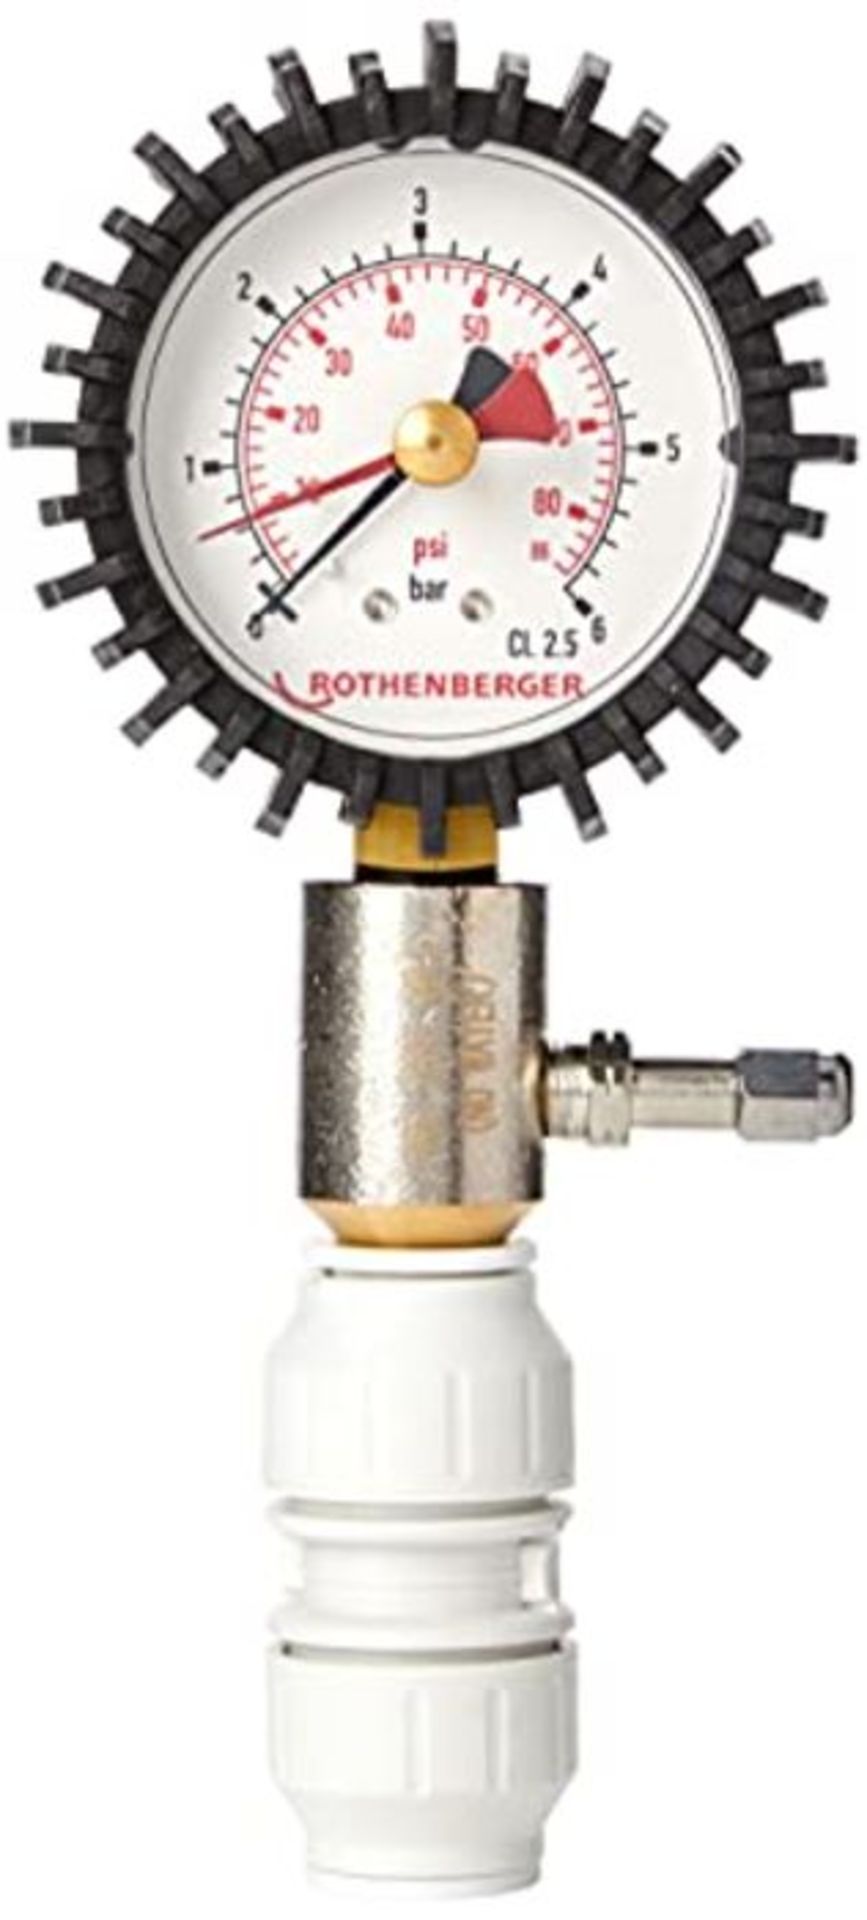 Rothenberger 67105 Dry Pressure Test Kit (0-6 BAR)